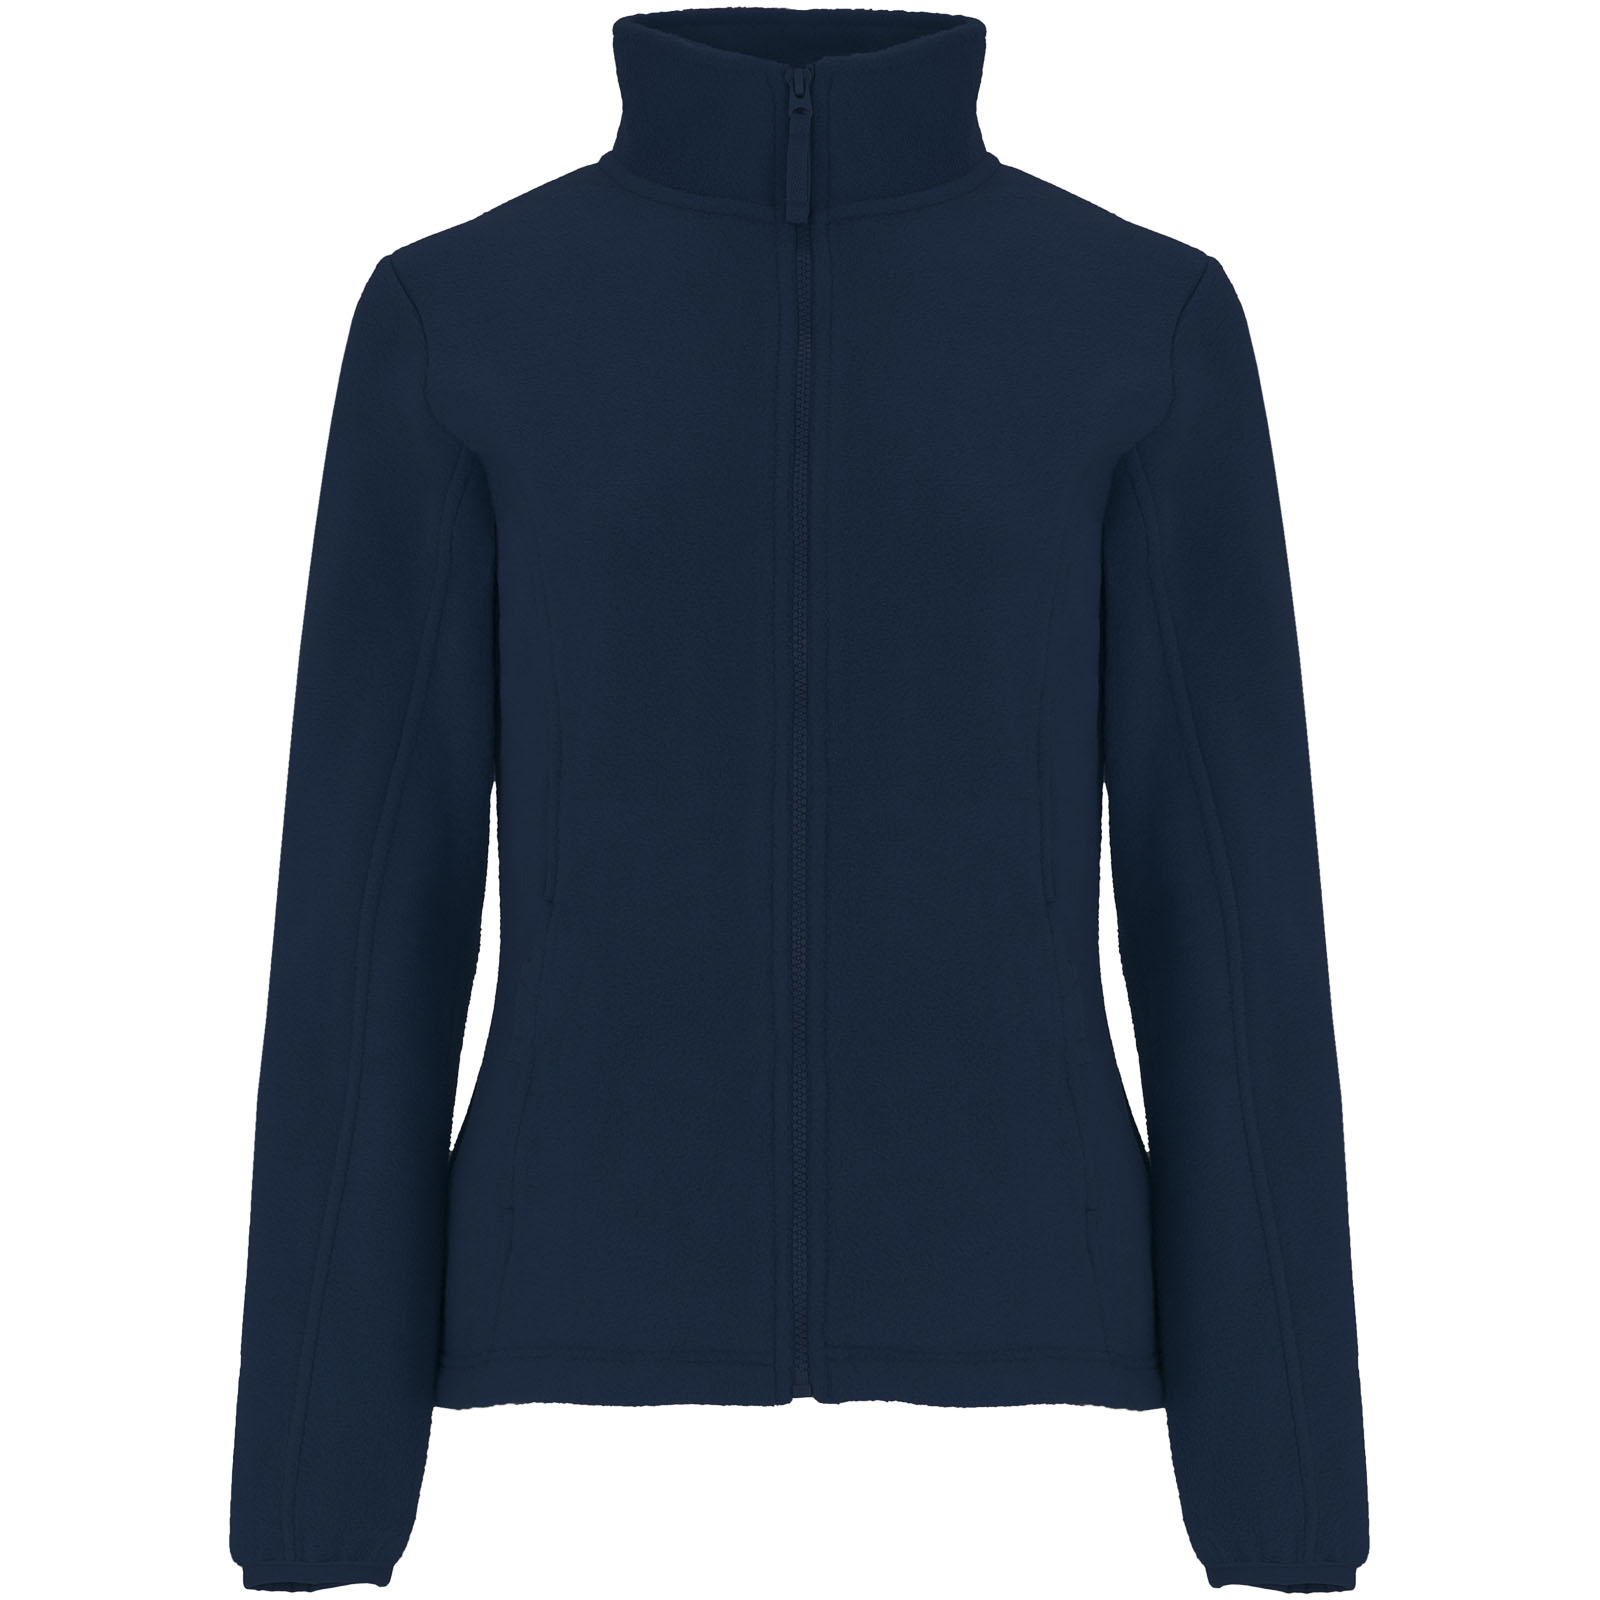 Fleece - Artic women's full zip fleece jacket